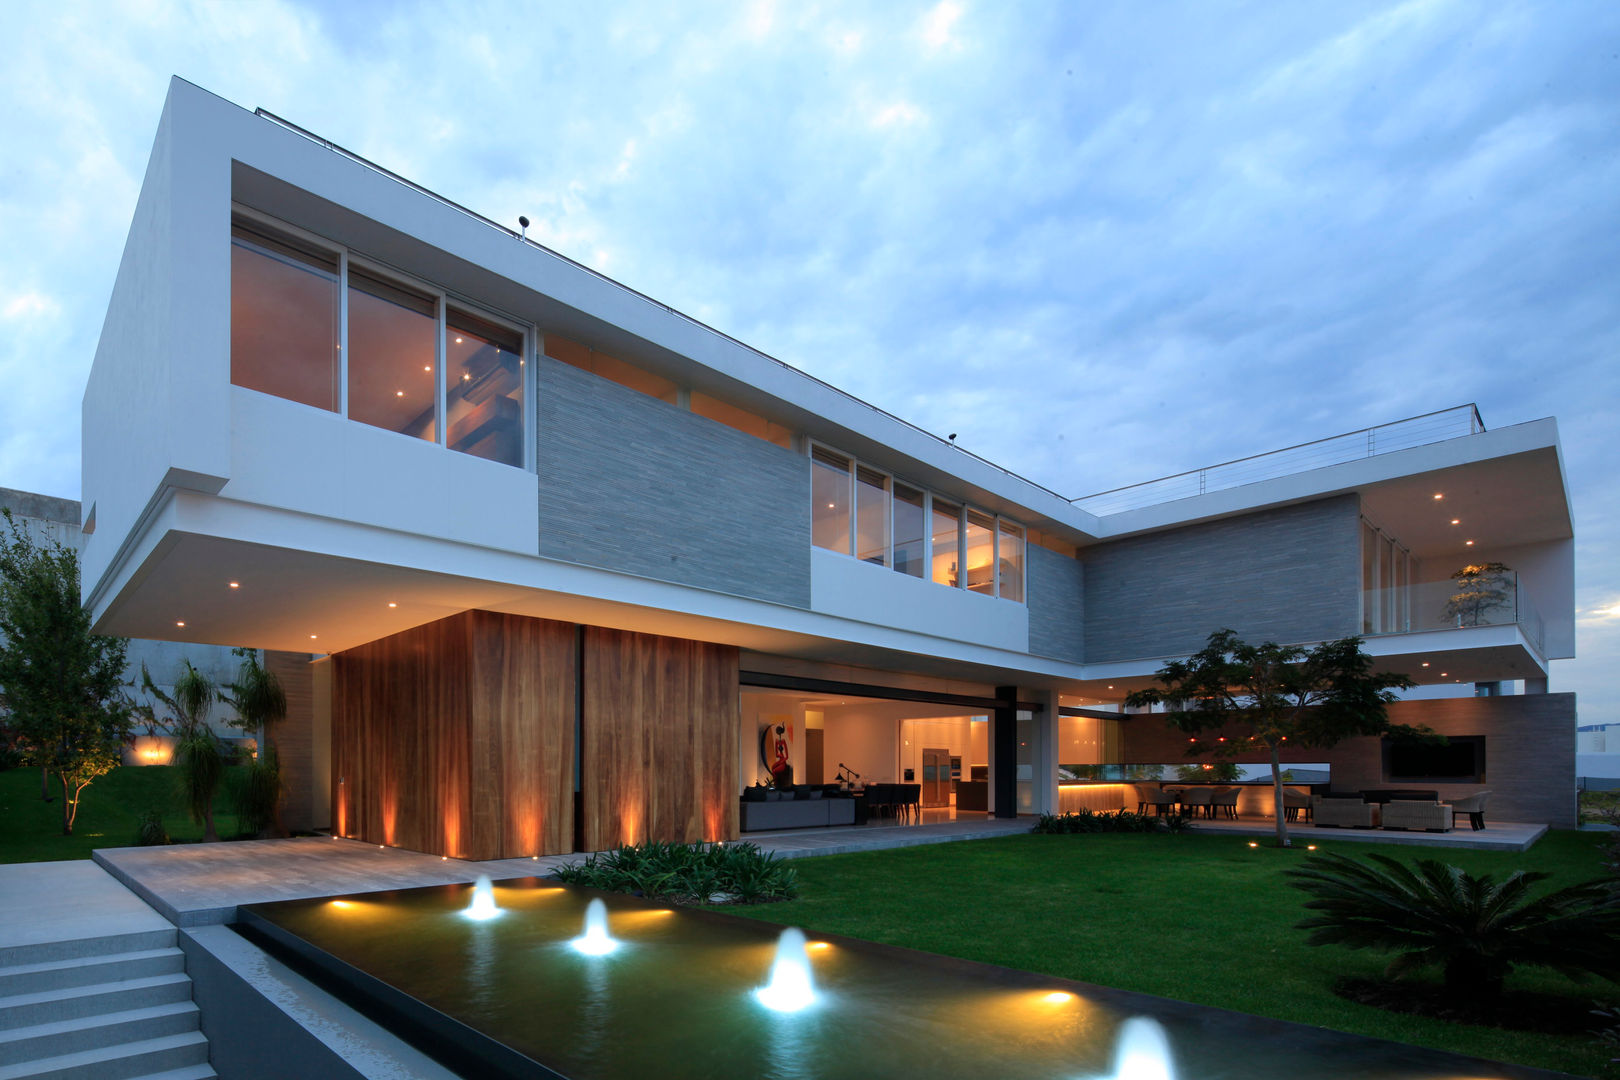 BR HOUSE, Hernandez Silva Arquitectos Hernandez Silva Arquitectos Casas modernas: Ideas, diseños y decoración